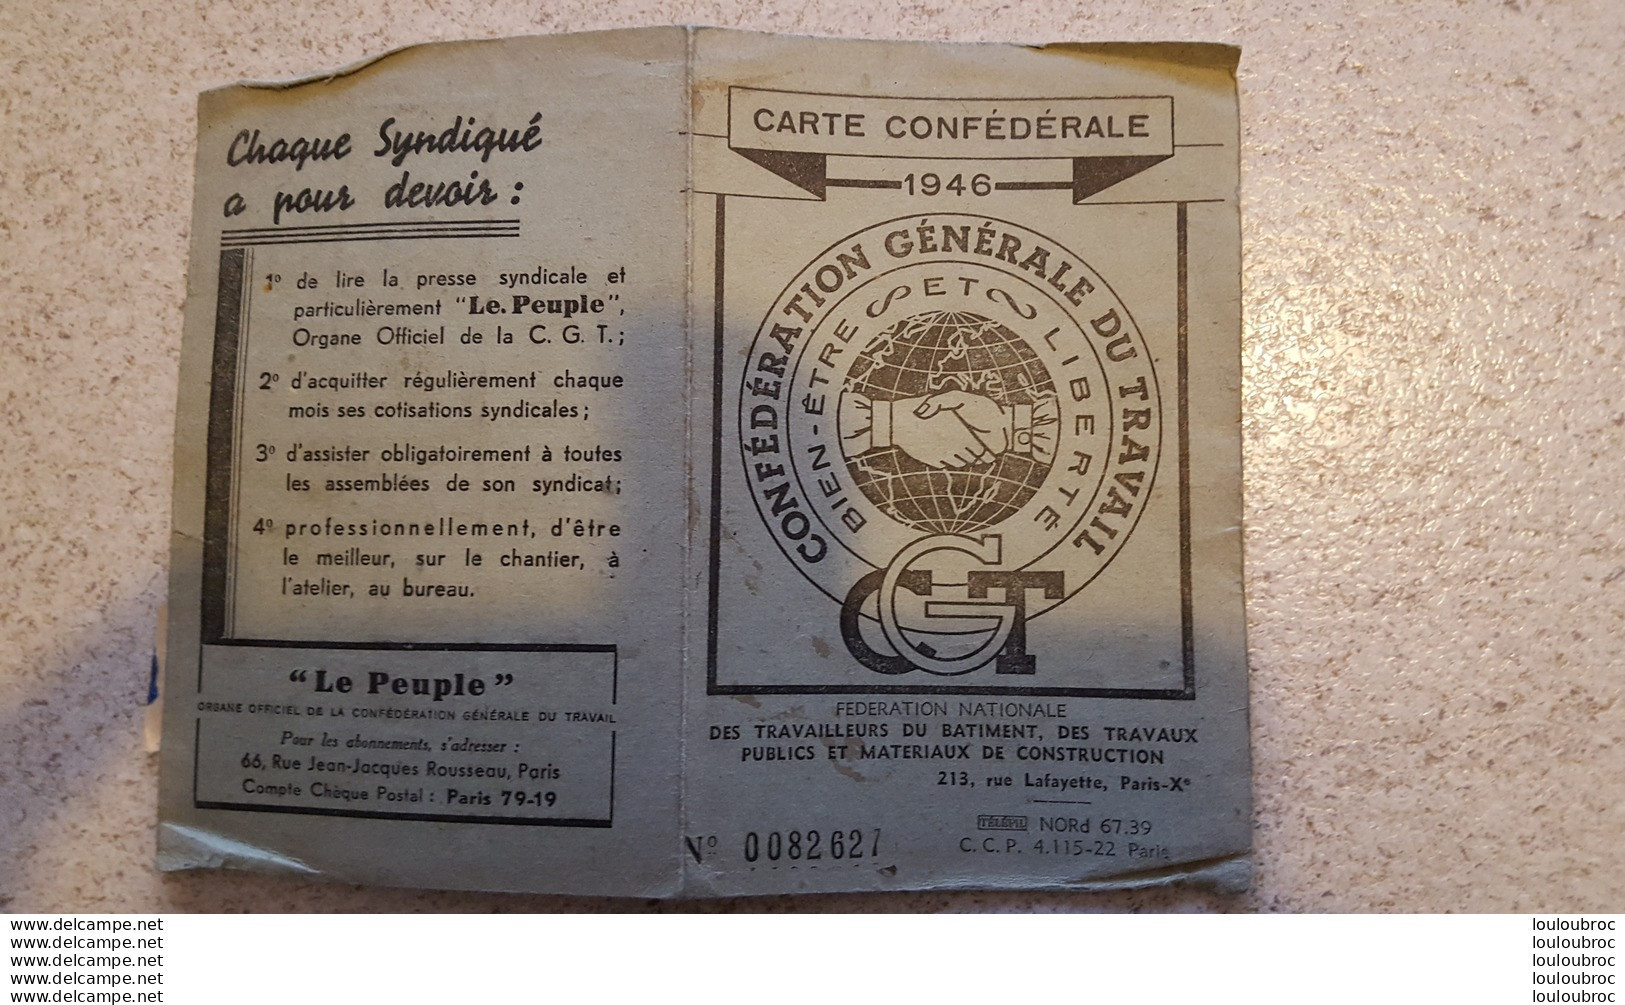 CARTE CONFEDERALE C.G.T. 1946 TRAVAILLEURS DU BATIMENT ET TRAVAUX PUBLICS CGT SECTION LOCALE - Historical Documents